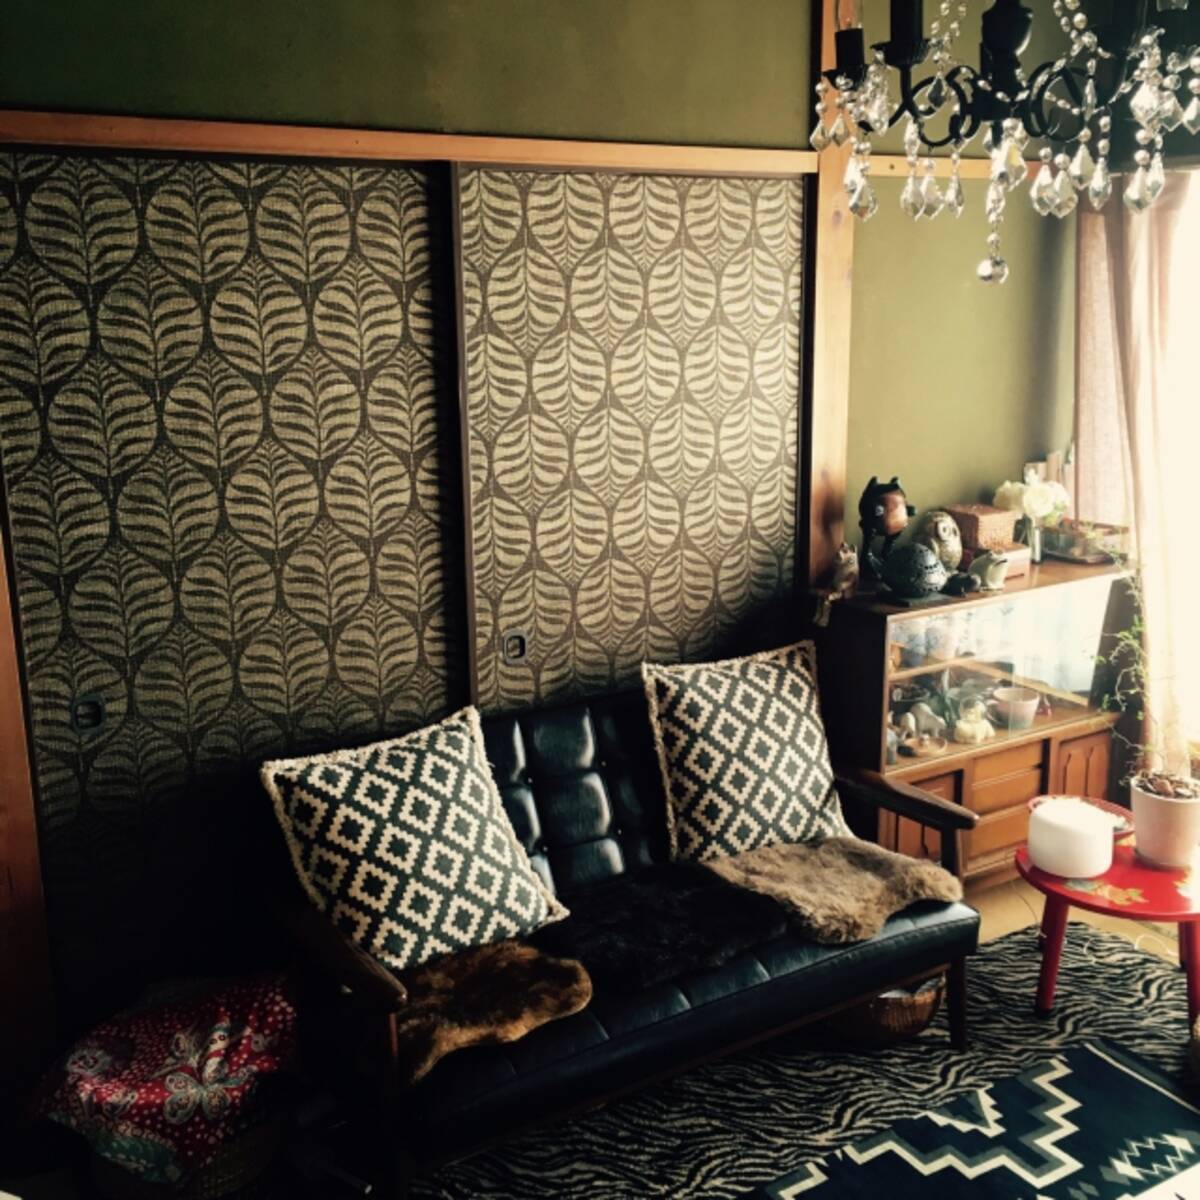 お部屋のイメージ激変 襖のリメイクで和室の模様替え ローリエプレス